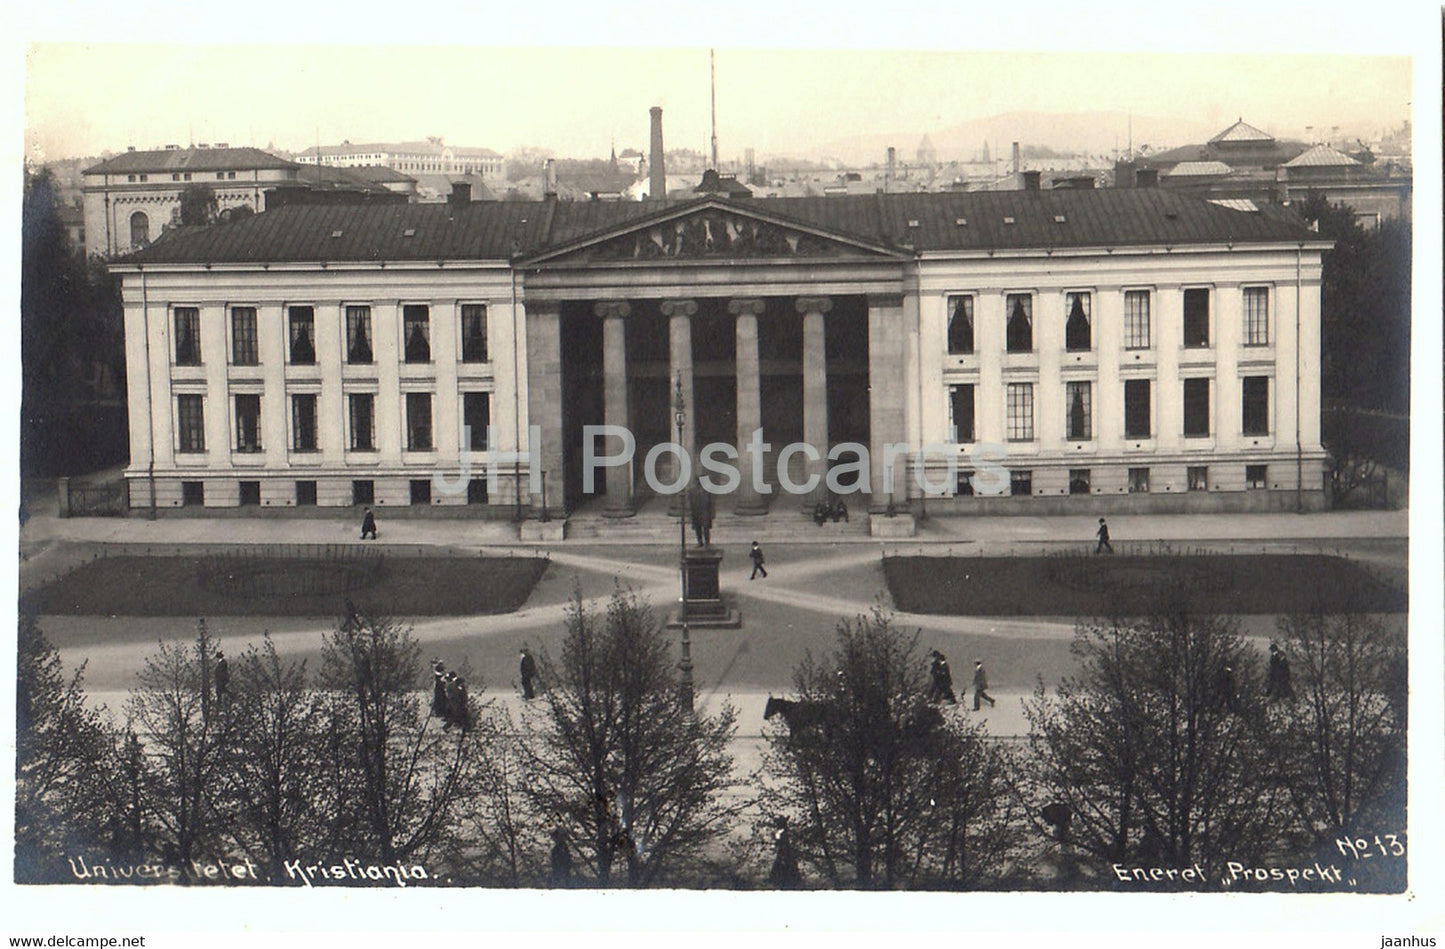 Kristiania - Oslo - Universitetet - university - 13 - old postcard - Norway - unused - JH Postcards